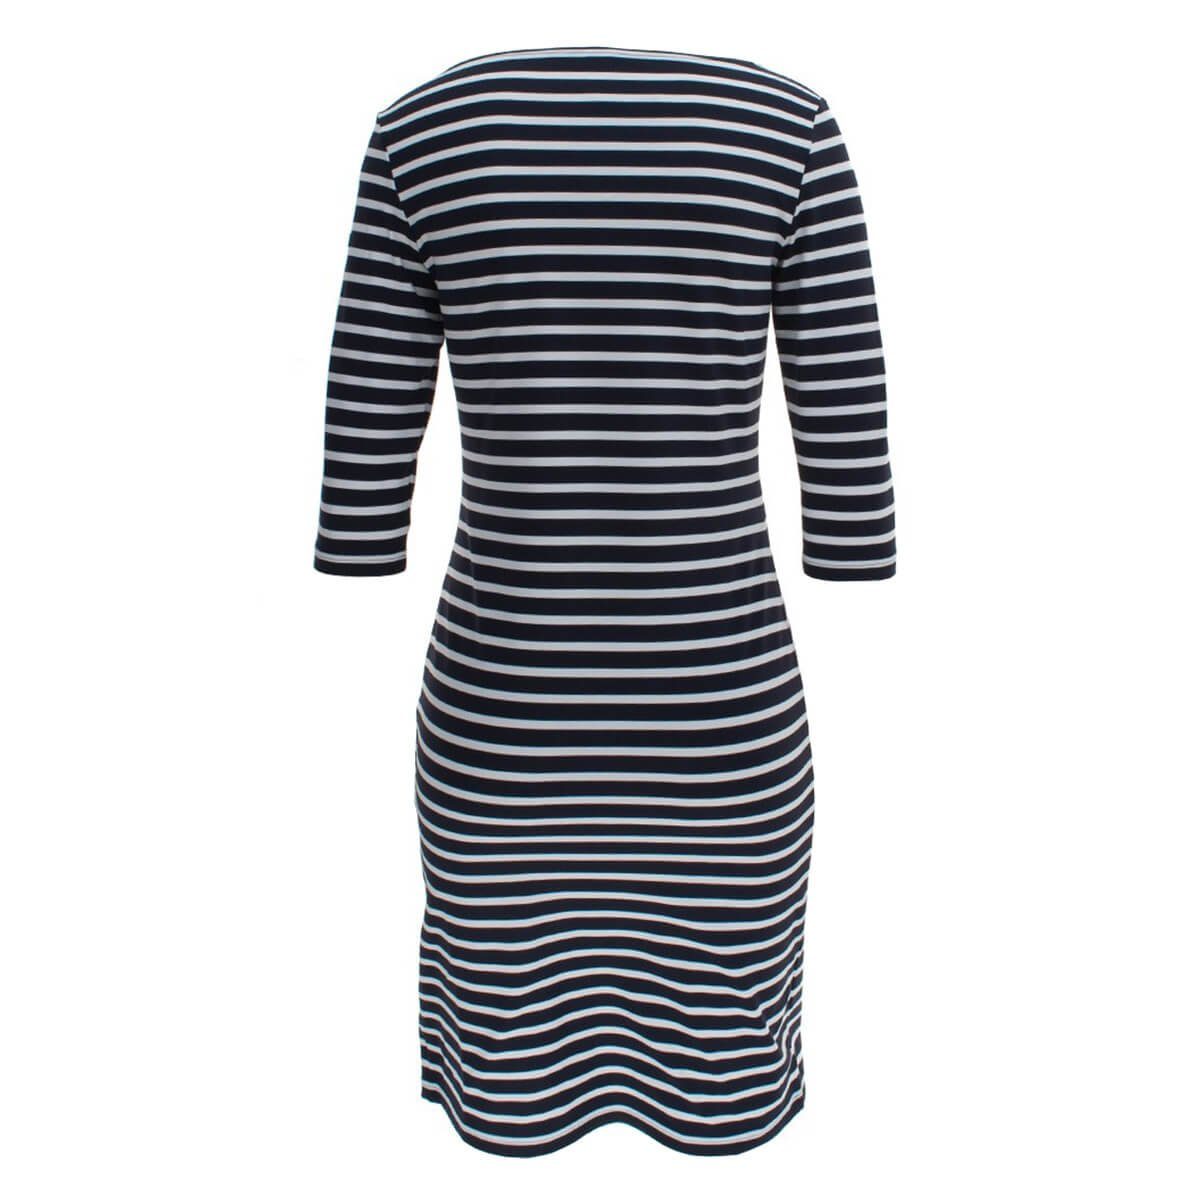 Saint James Shirtkleid 0742 mit Kleid Propriano III Streifen Blau-Weiß(6T) Sommershirtkleid Damen Streifenkleid